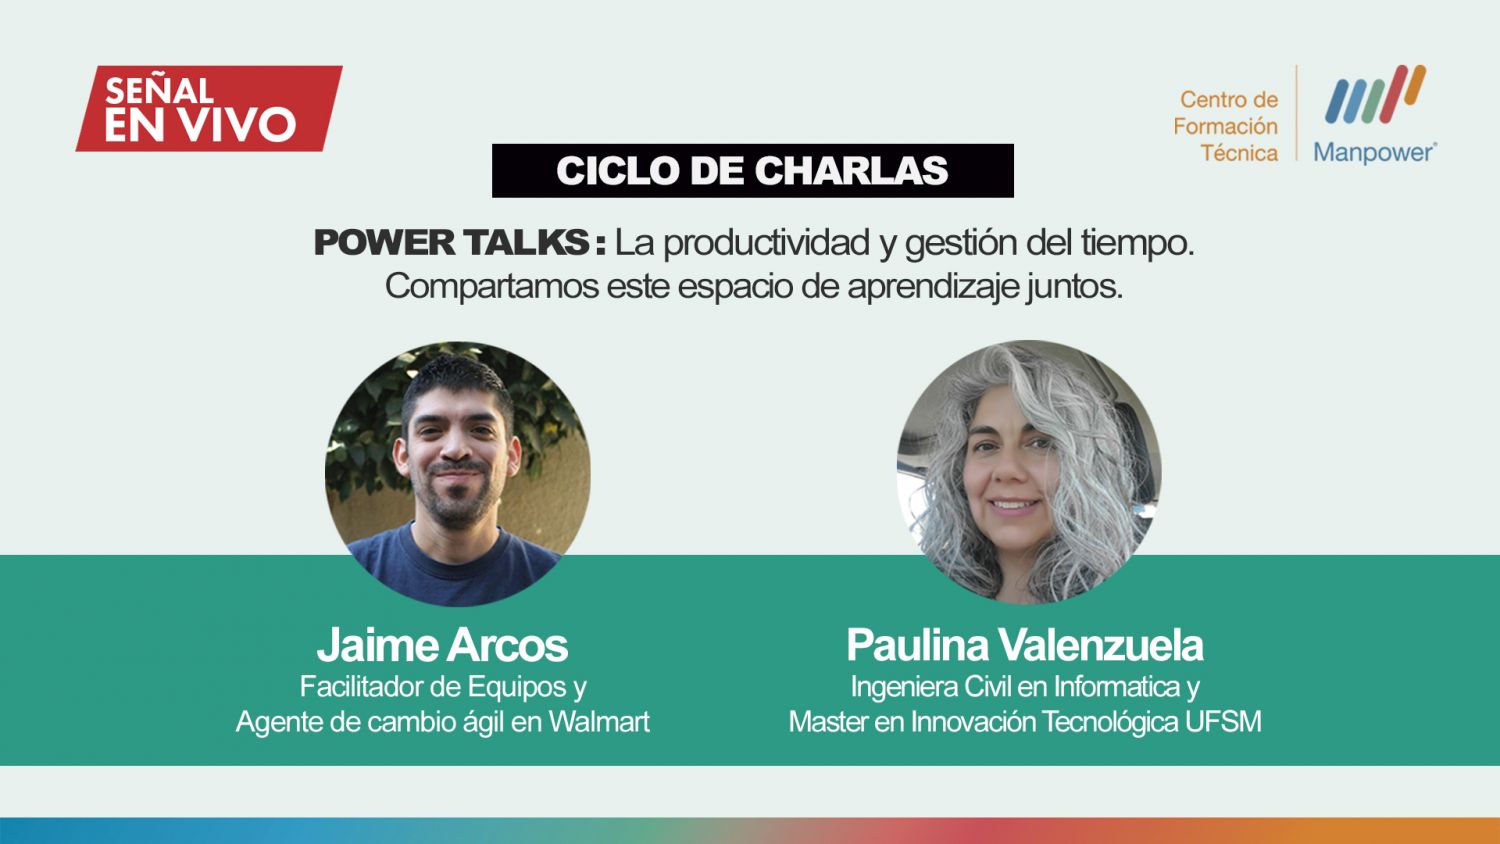 CFT Manpower da inicio al Ciclo de Charlas “Power Talks”